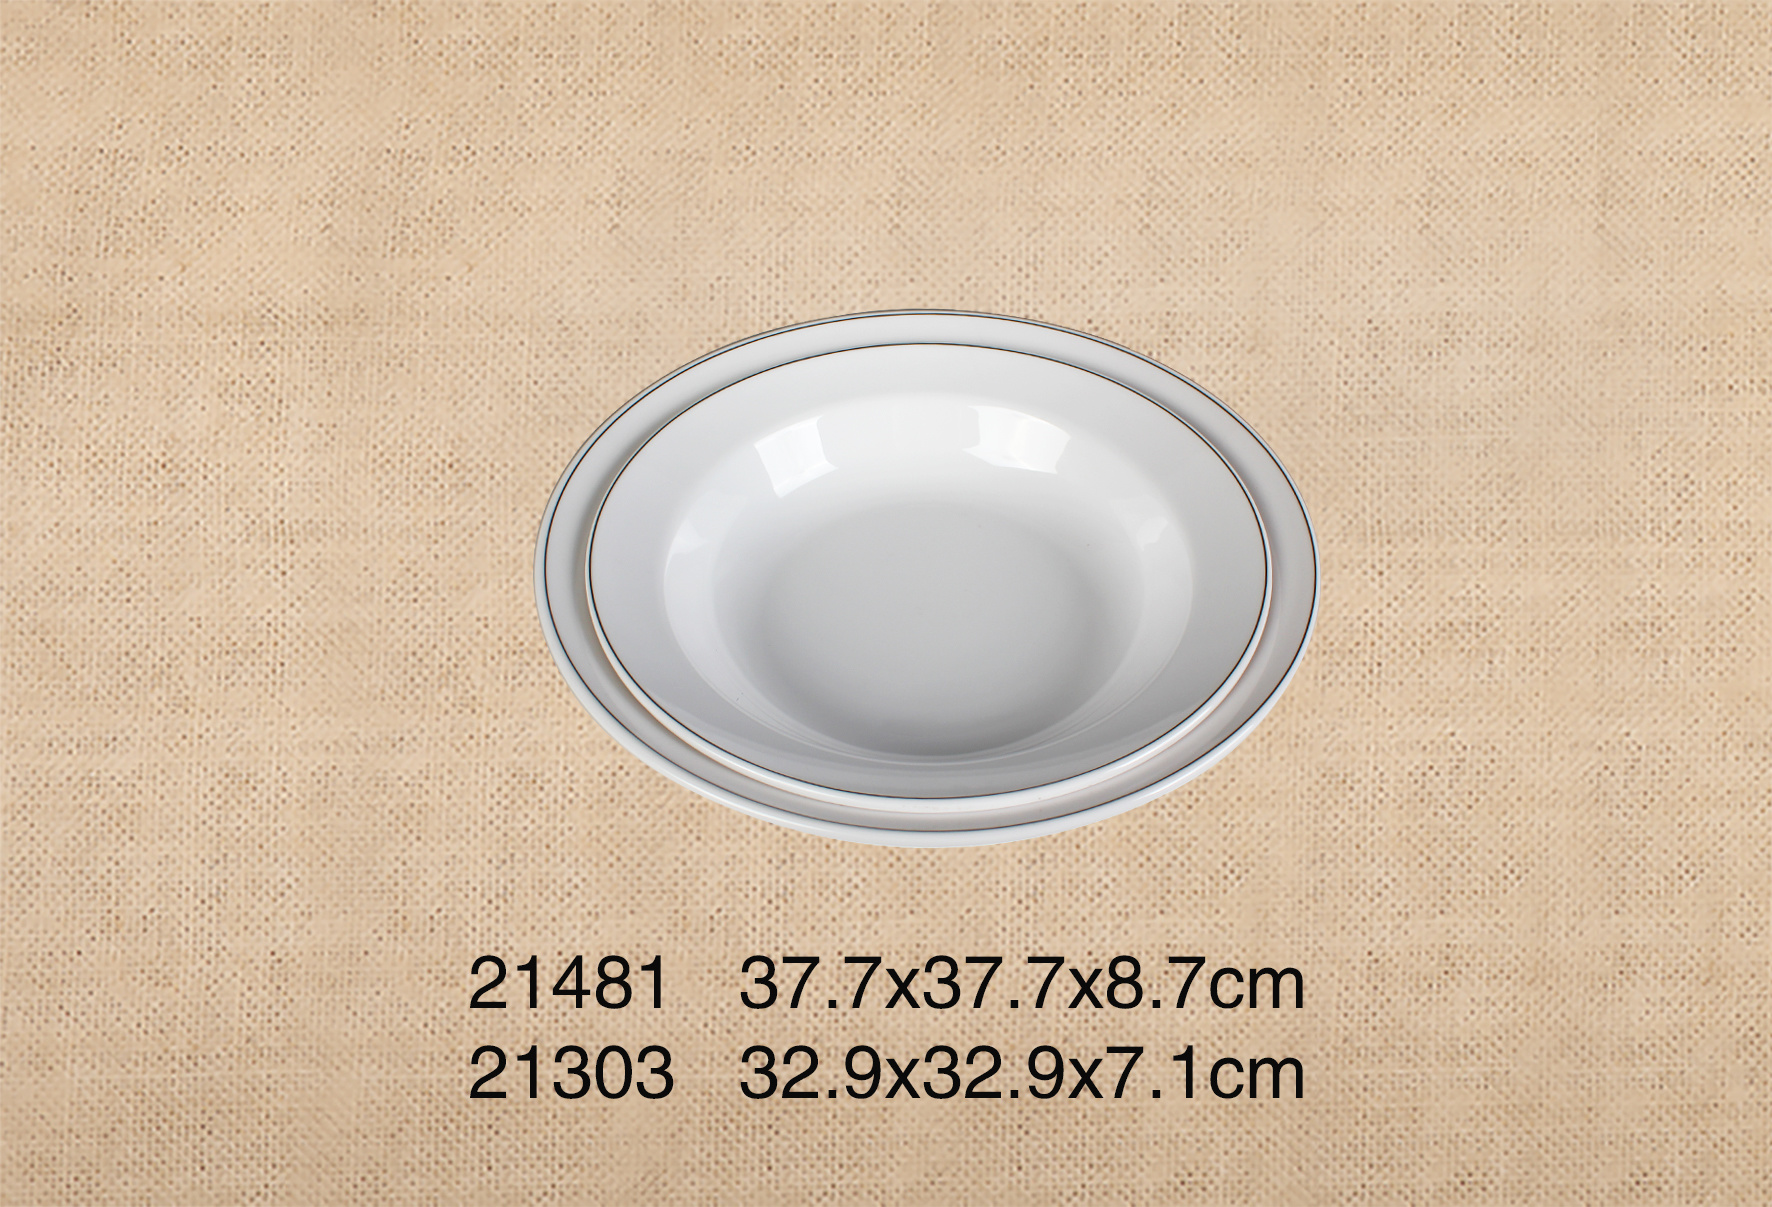 21481+21303  14.8寸宽边圆碗 + 13寸宽边圆碗